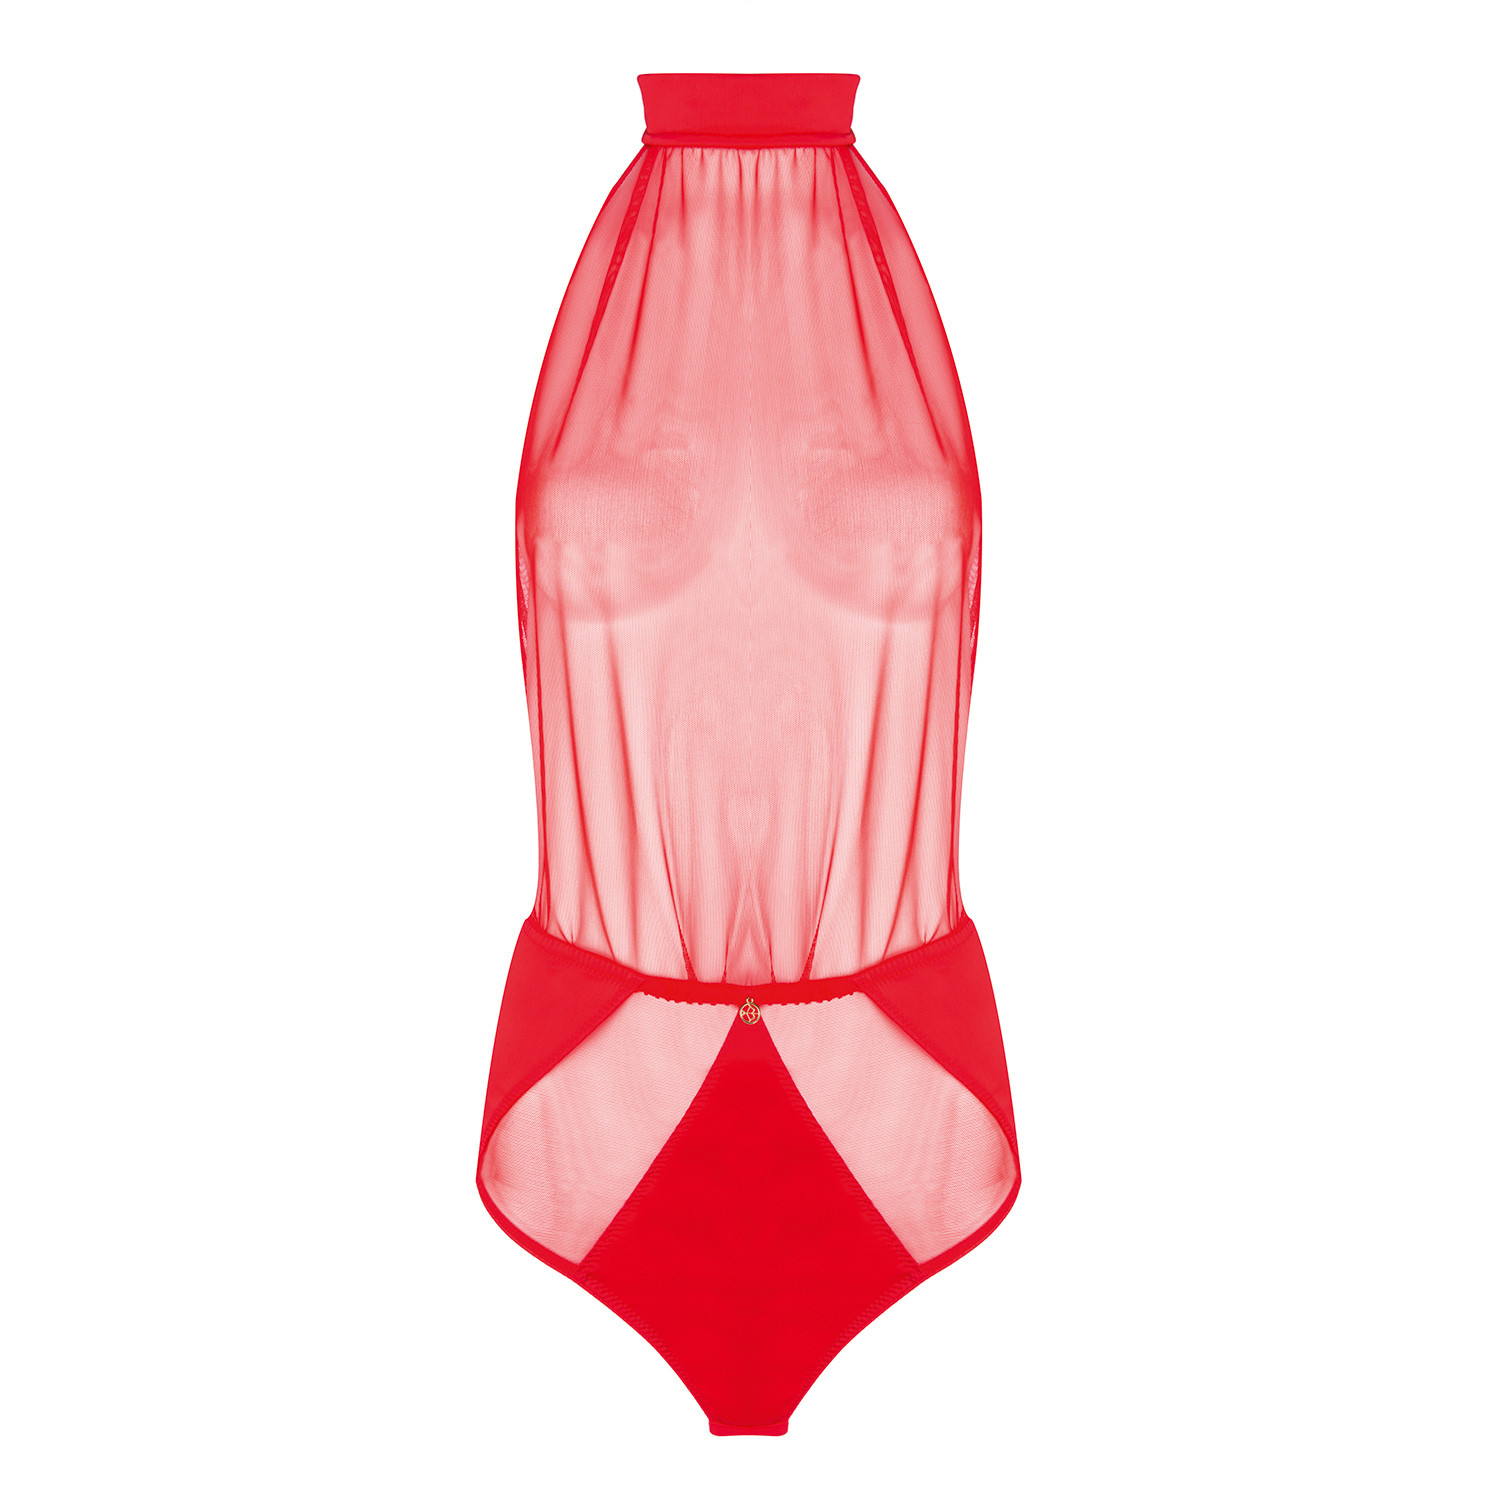 Luxus Bondage Body in Rot von Escora/Diamor